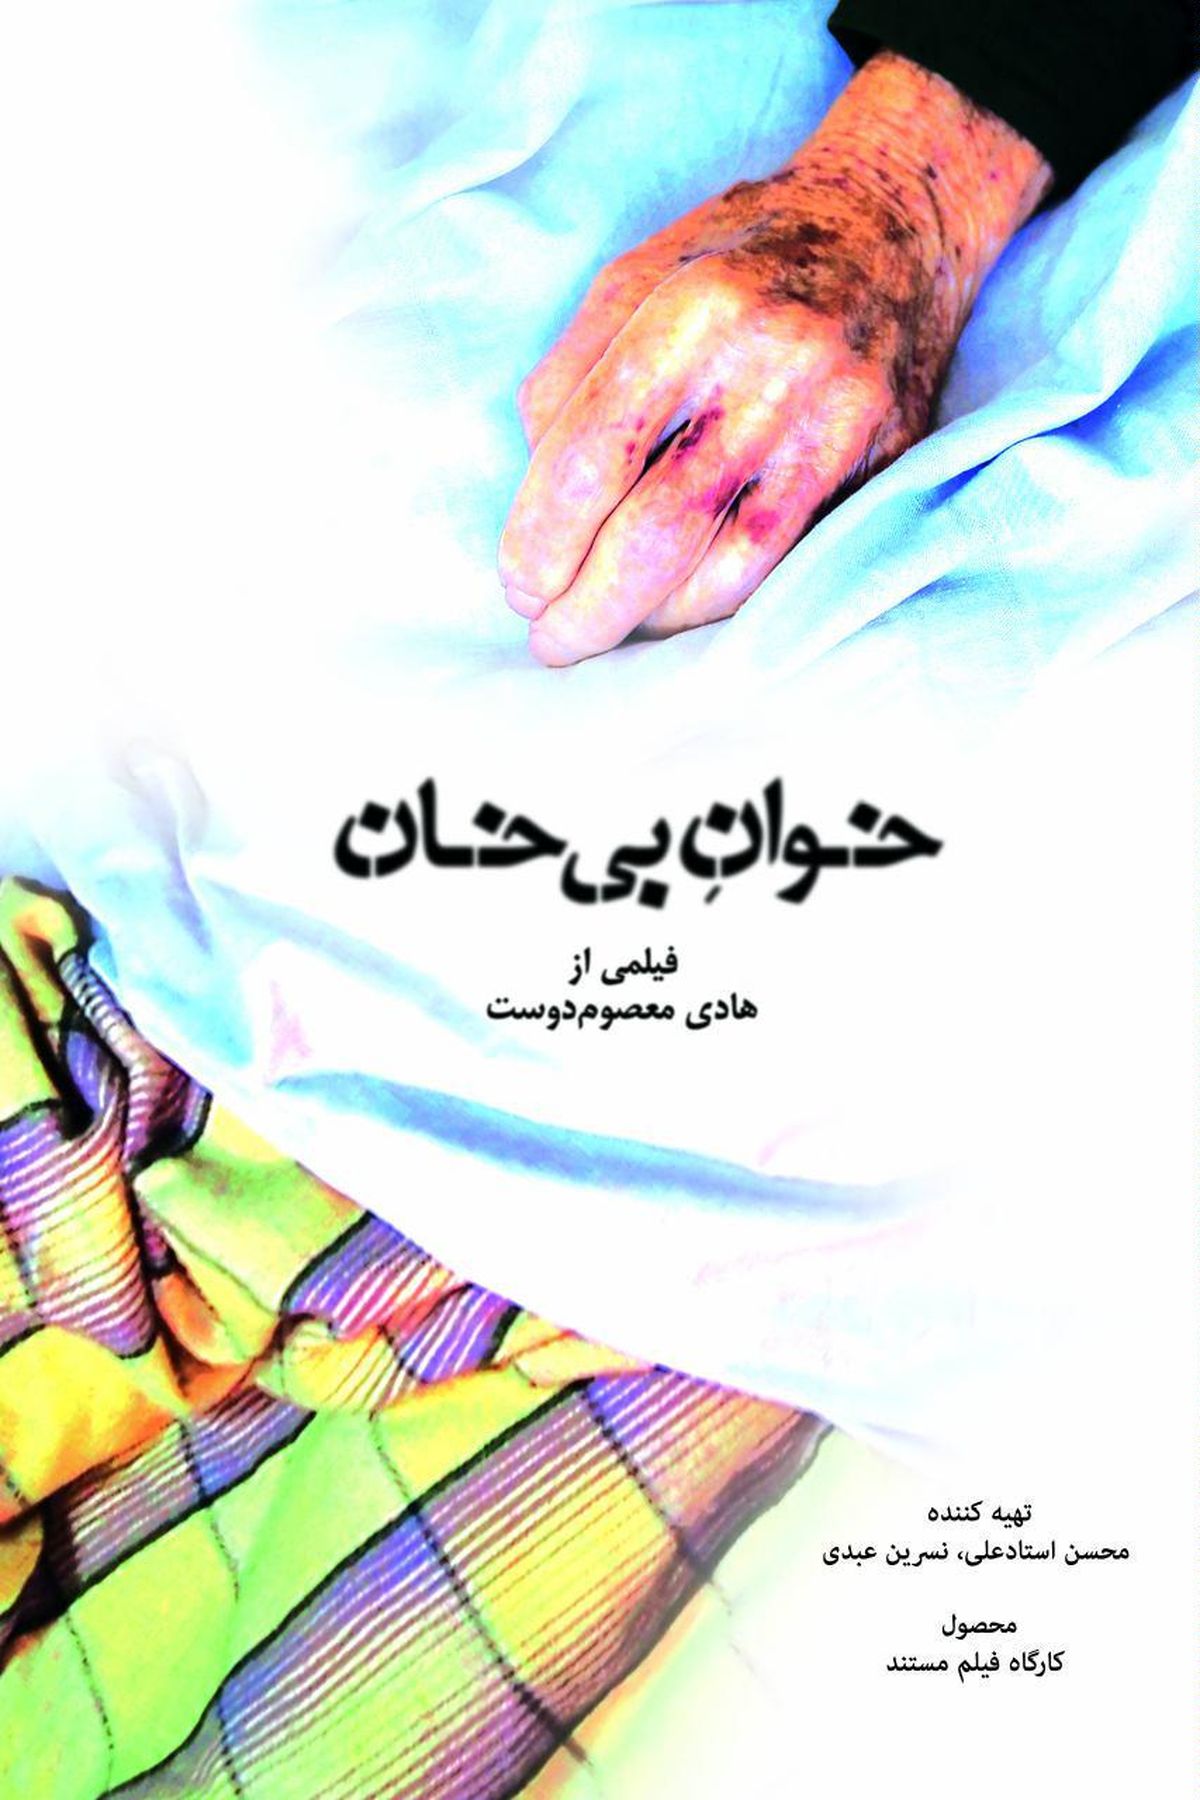 نمایش "خوان بی خان" در جشنواره سینما حقیقت